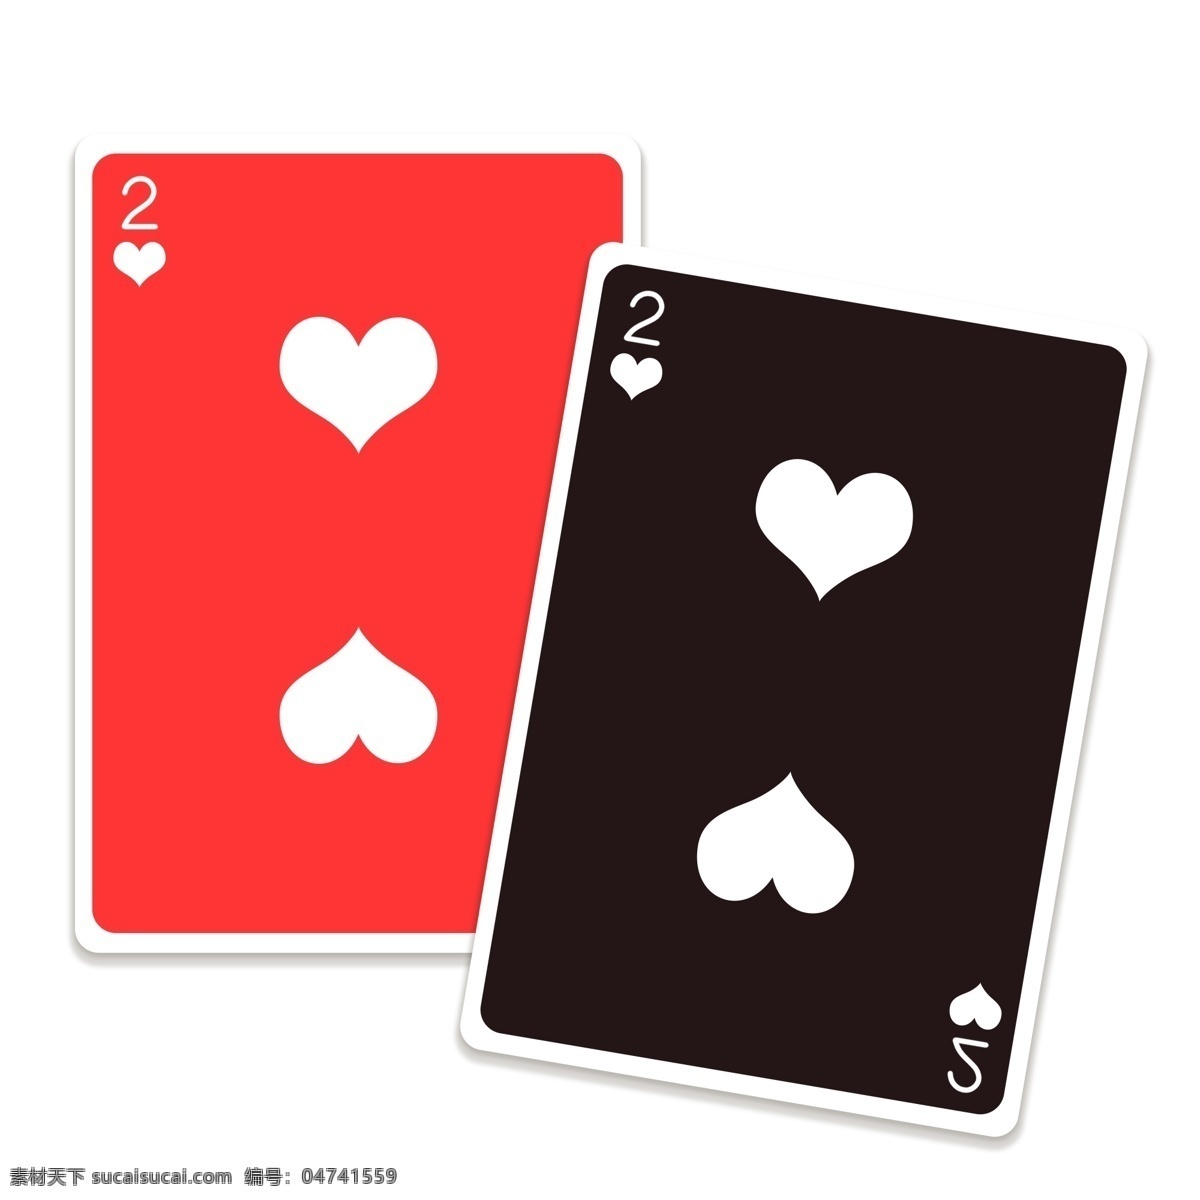 红 黑 游戏 扑克牌 纸牌 游戏纸牌 红黑 打扑克 打扑克牌 娱乐游戏 娱乐 红心 红色 黑色